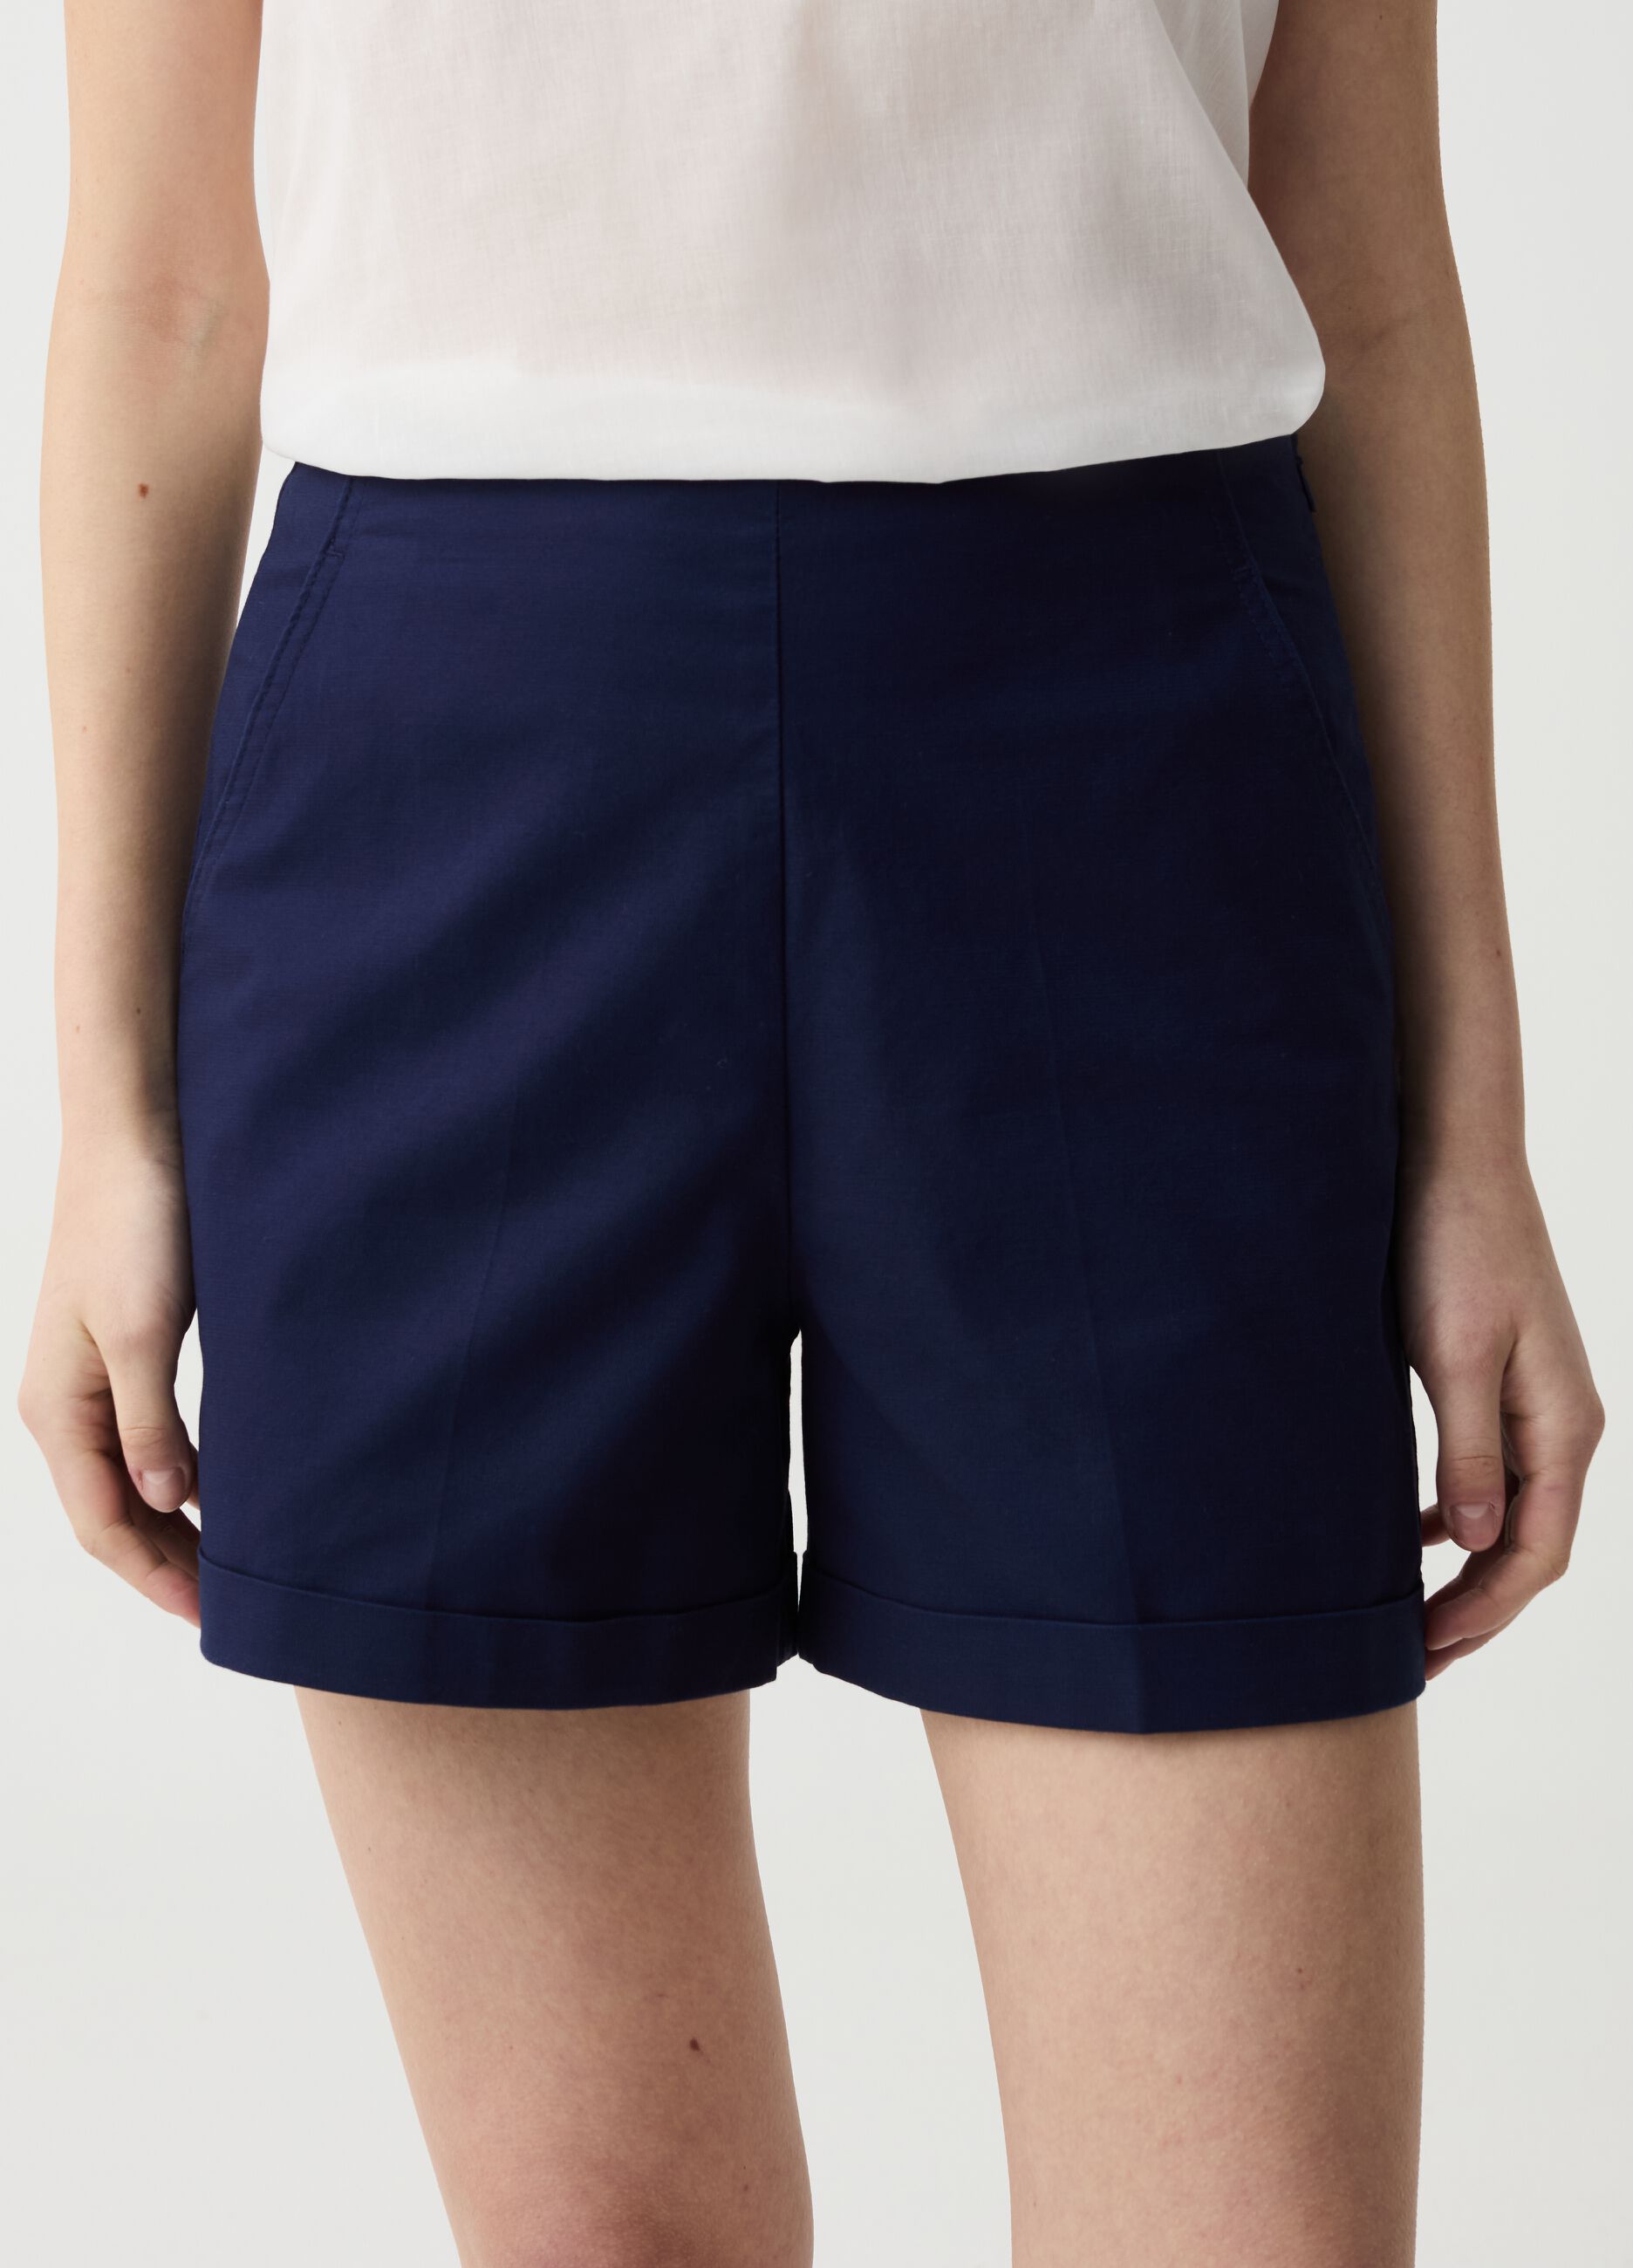 Shorts de algodón elástico con bajos vueltos